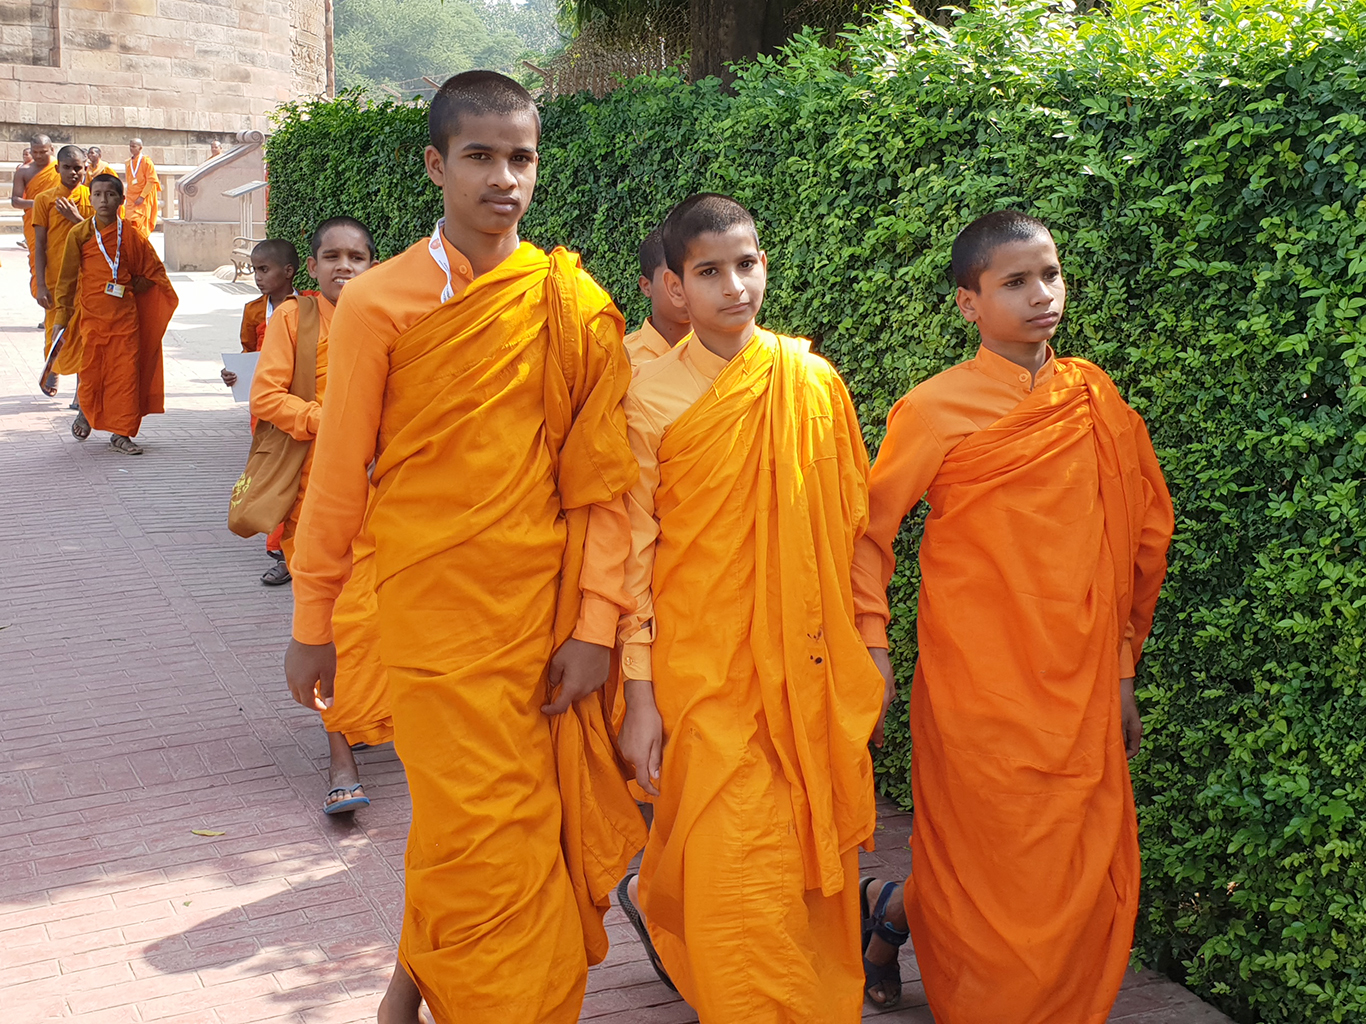 V Sarnáthu, posvátném buddhistickém místě, potkáte mnoho mladých mnichů